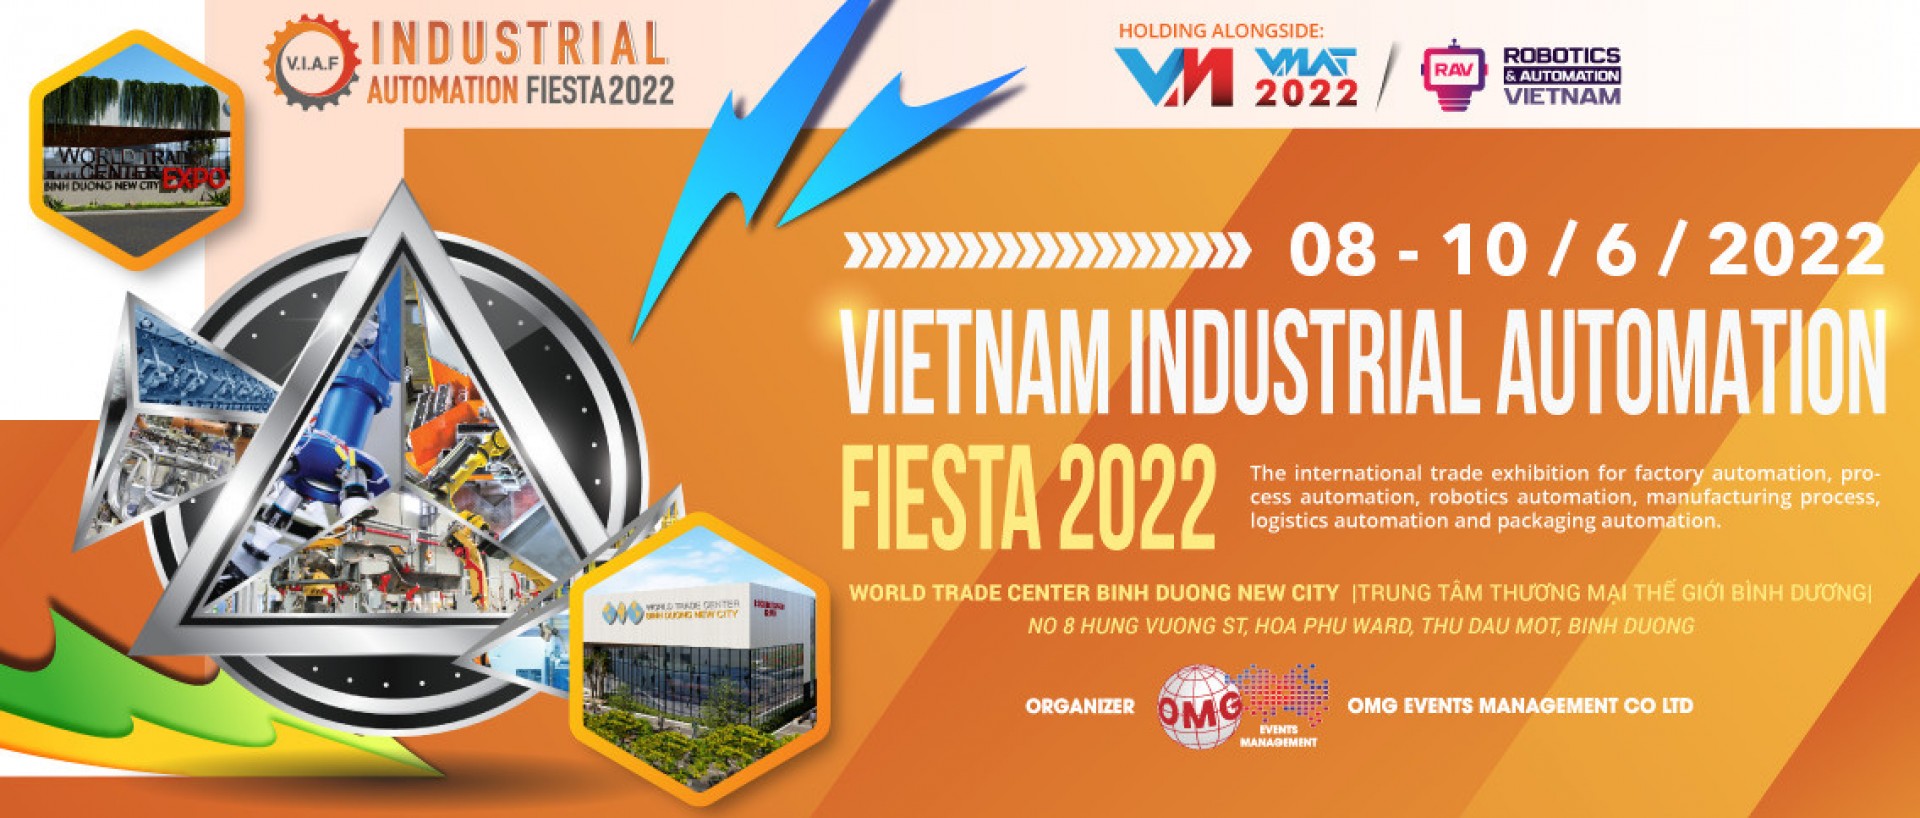 VIAF Bình Dương 2022 - Triển lãm Tự động hóa Công nghiệp Việt Nam